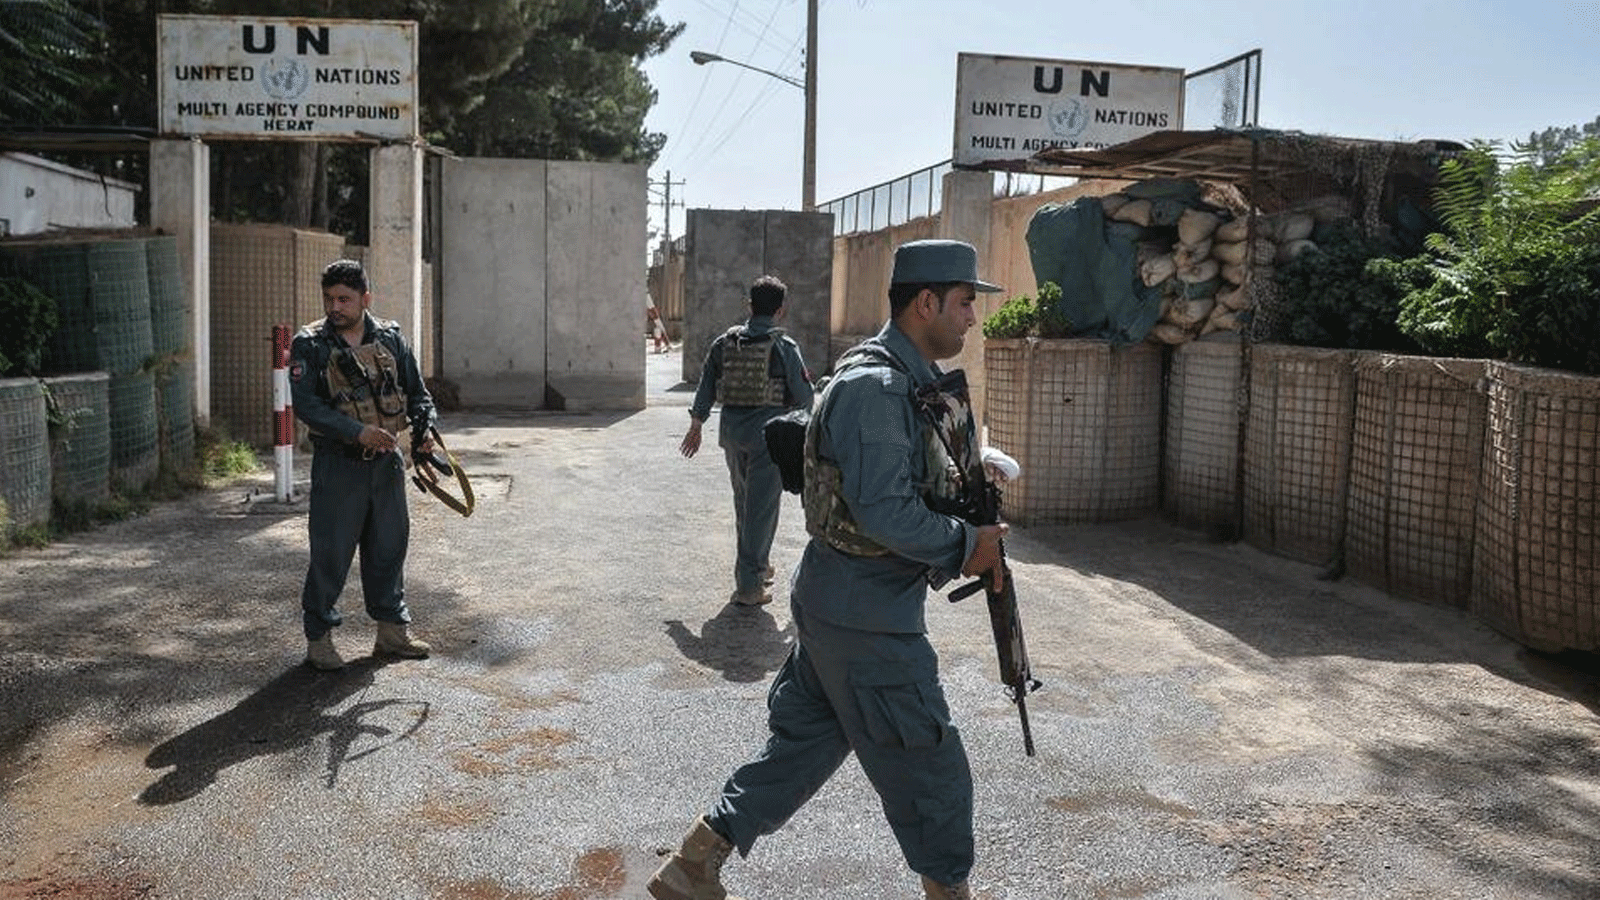 حراس الأمن خارج مكتب بعثة الأمم المتحدة لمساعدة أفغانستان (يوناما) في منطقة غوزارا في هرات. بتاريخ في 31 تموز/ يوليو 2021 